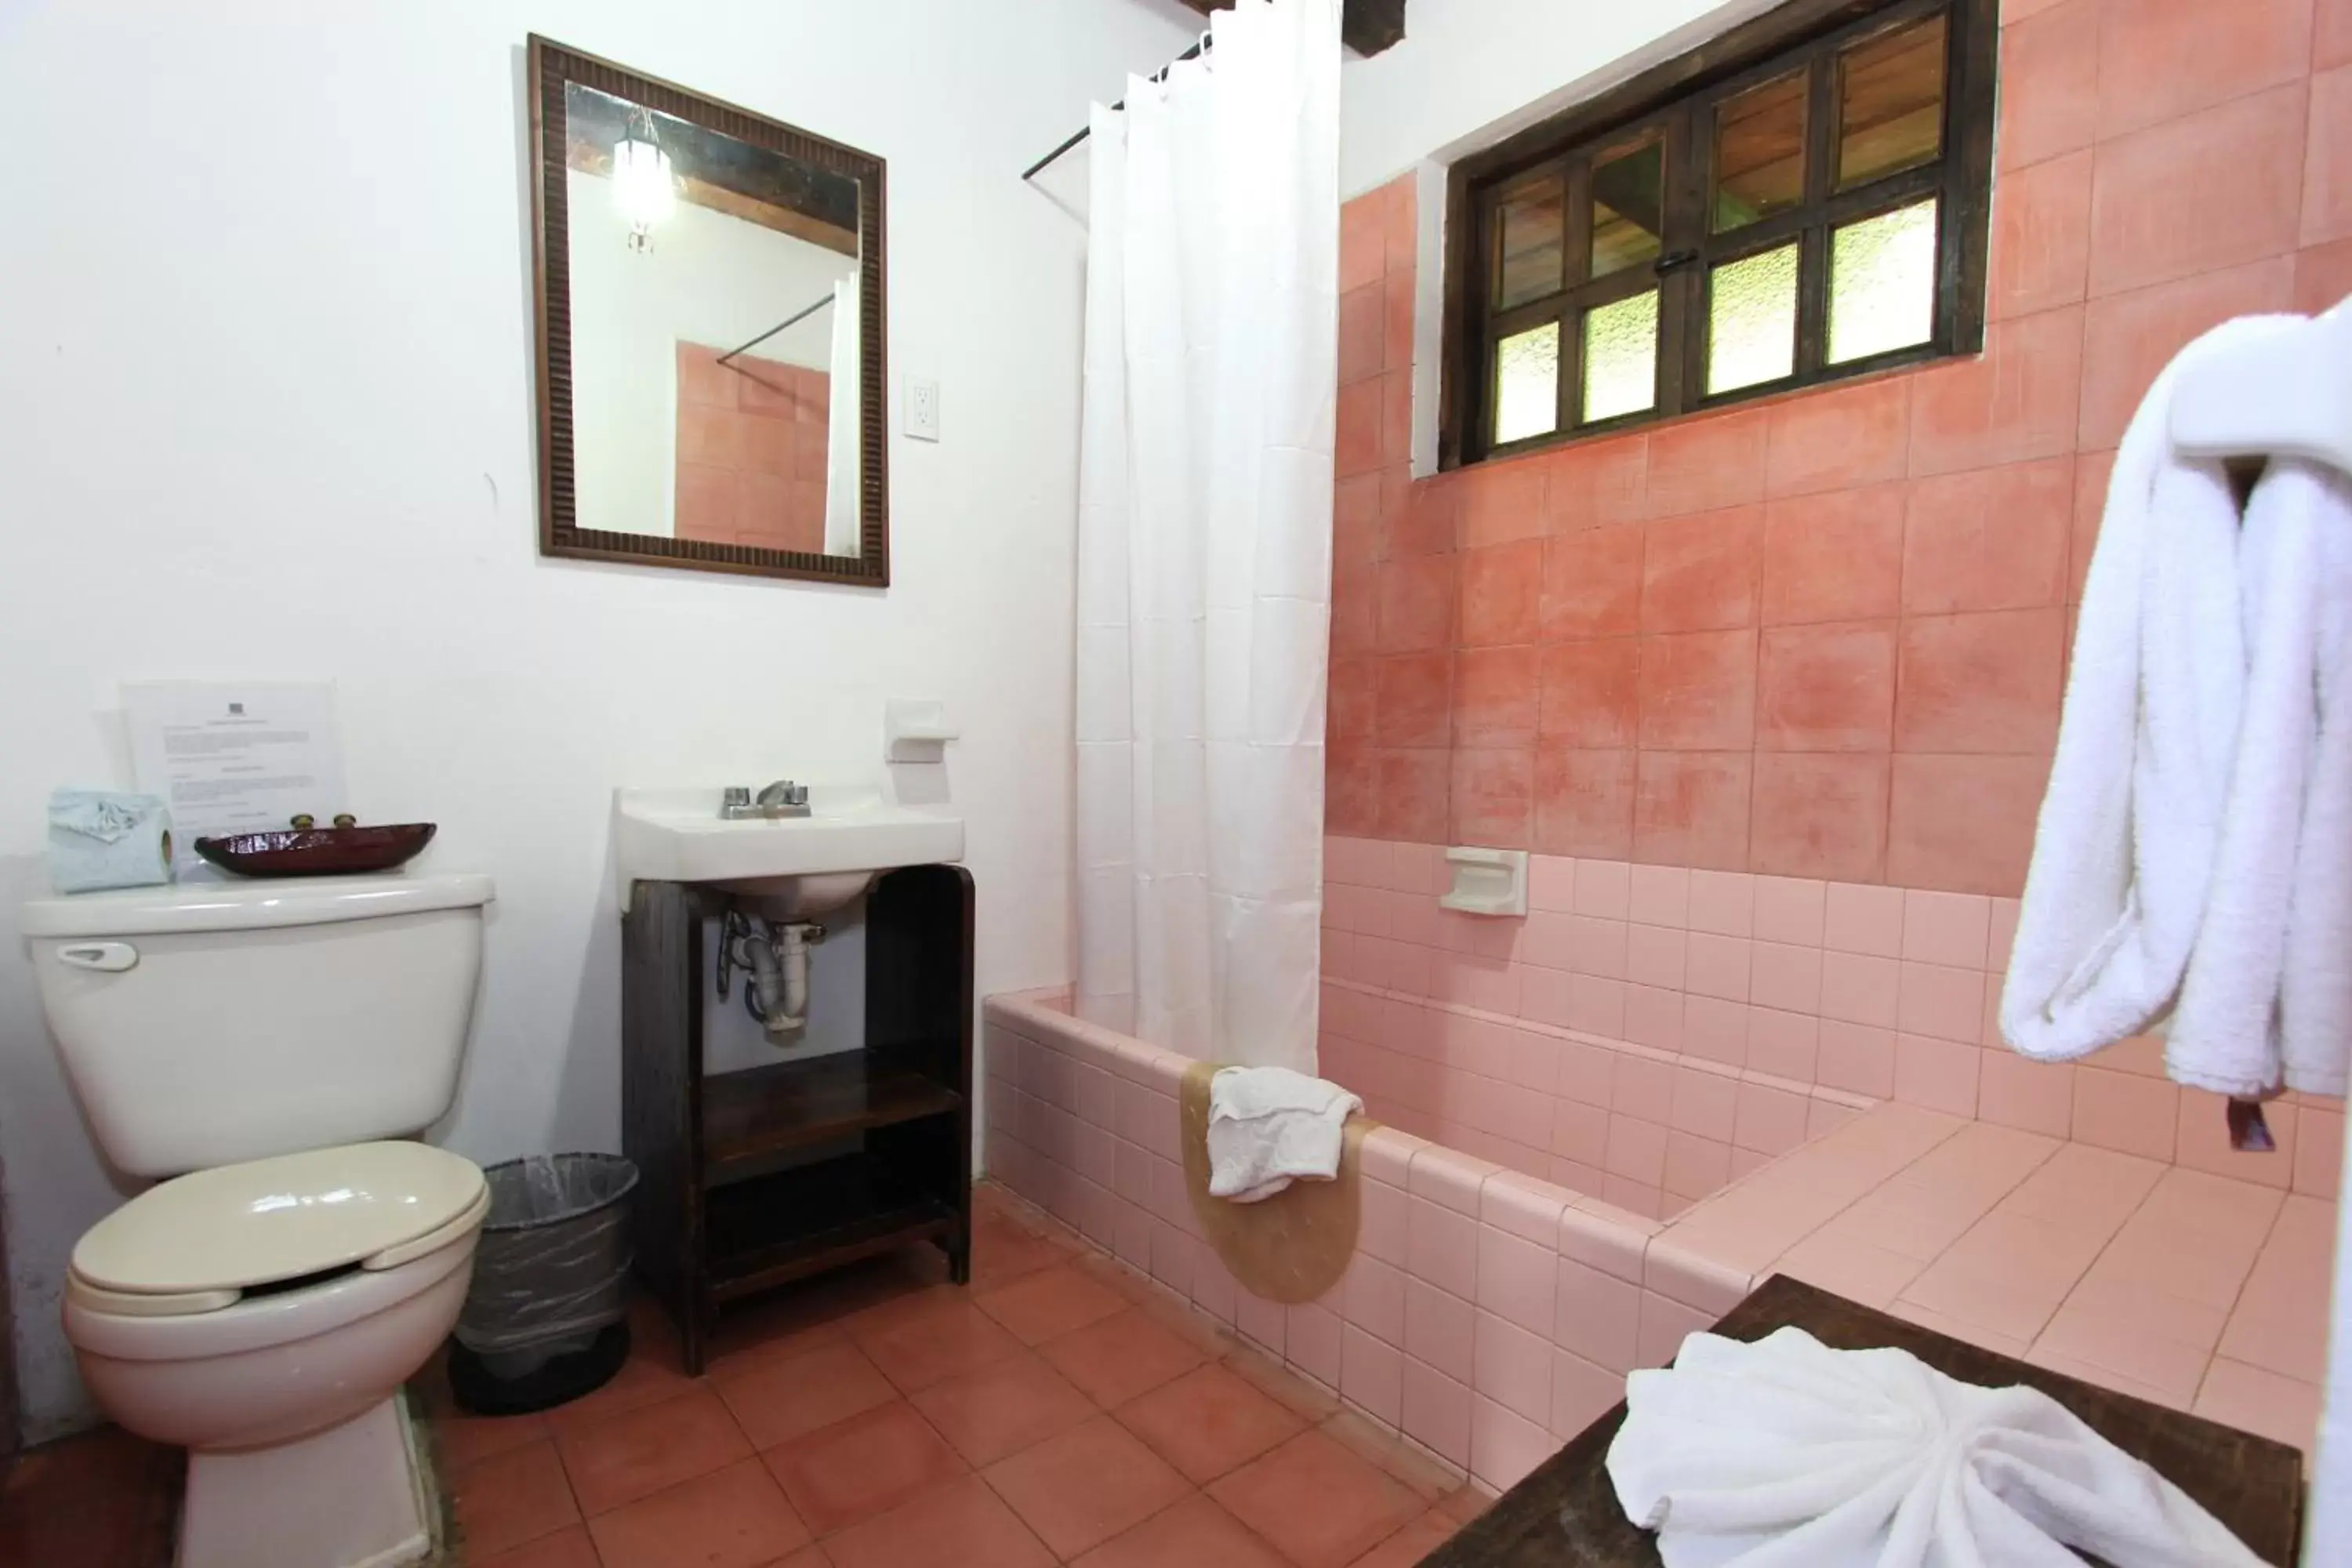 Toilet, Bathroom in Hotel Na Bolom